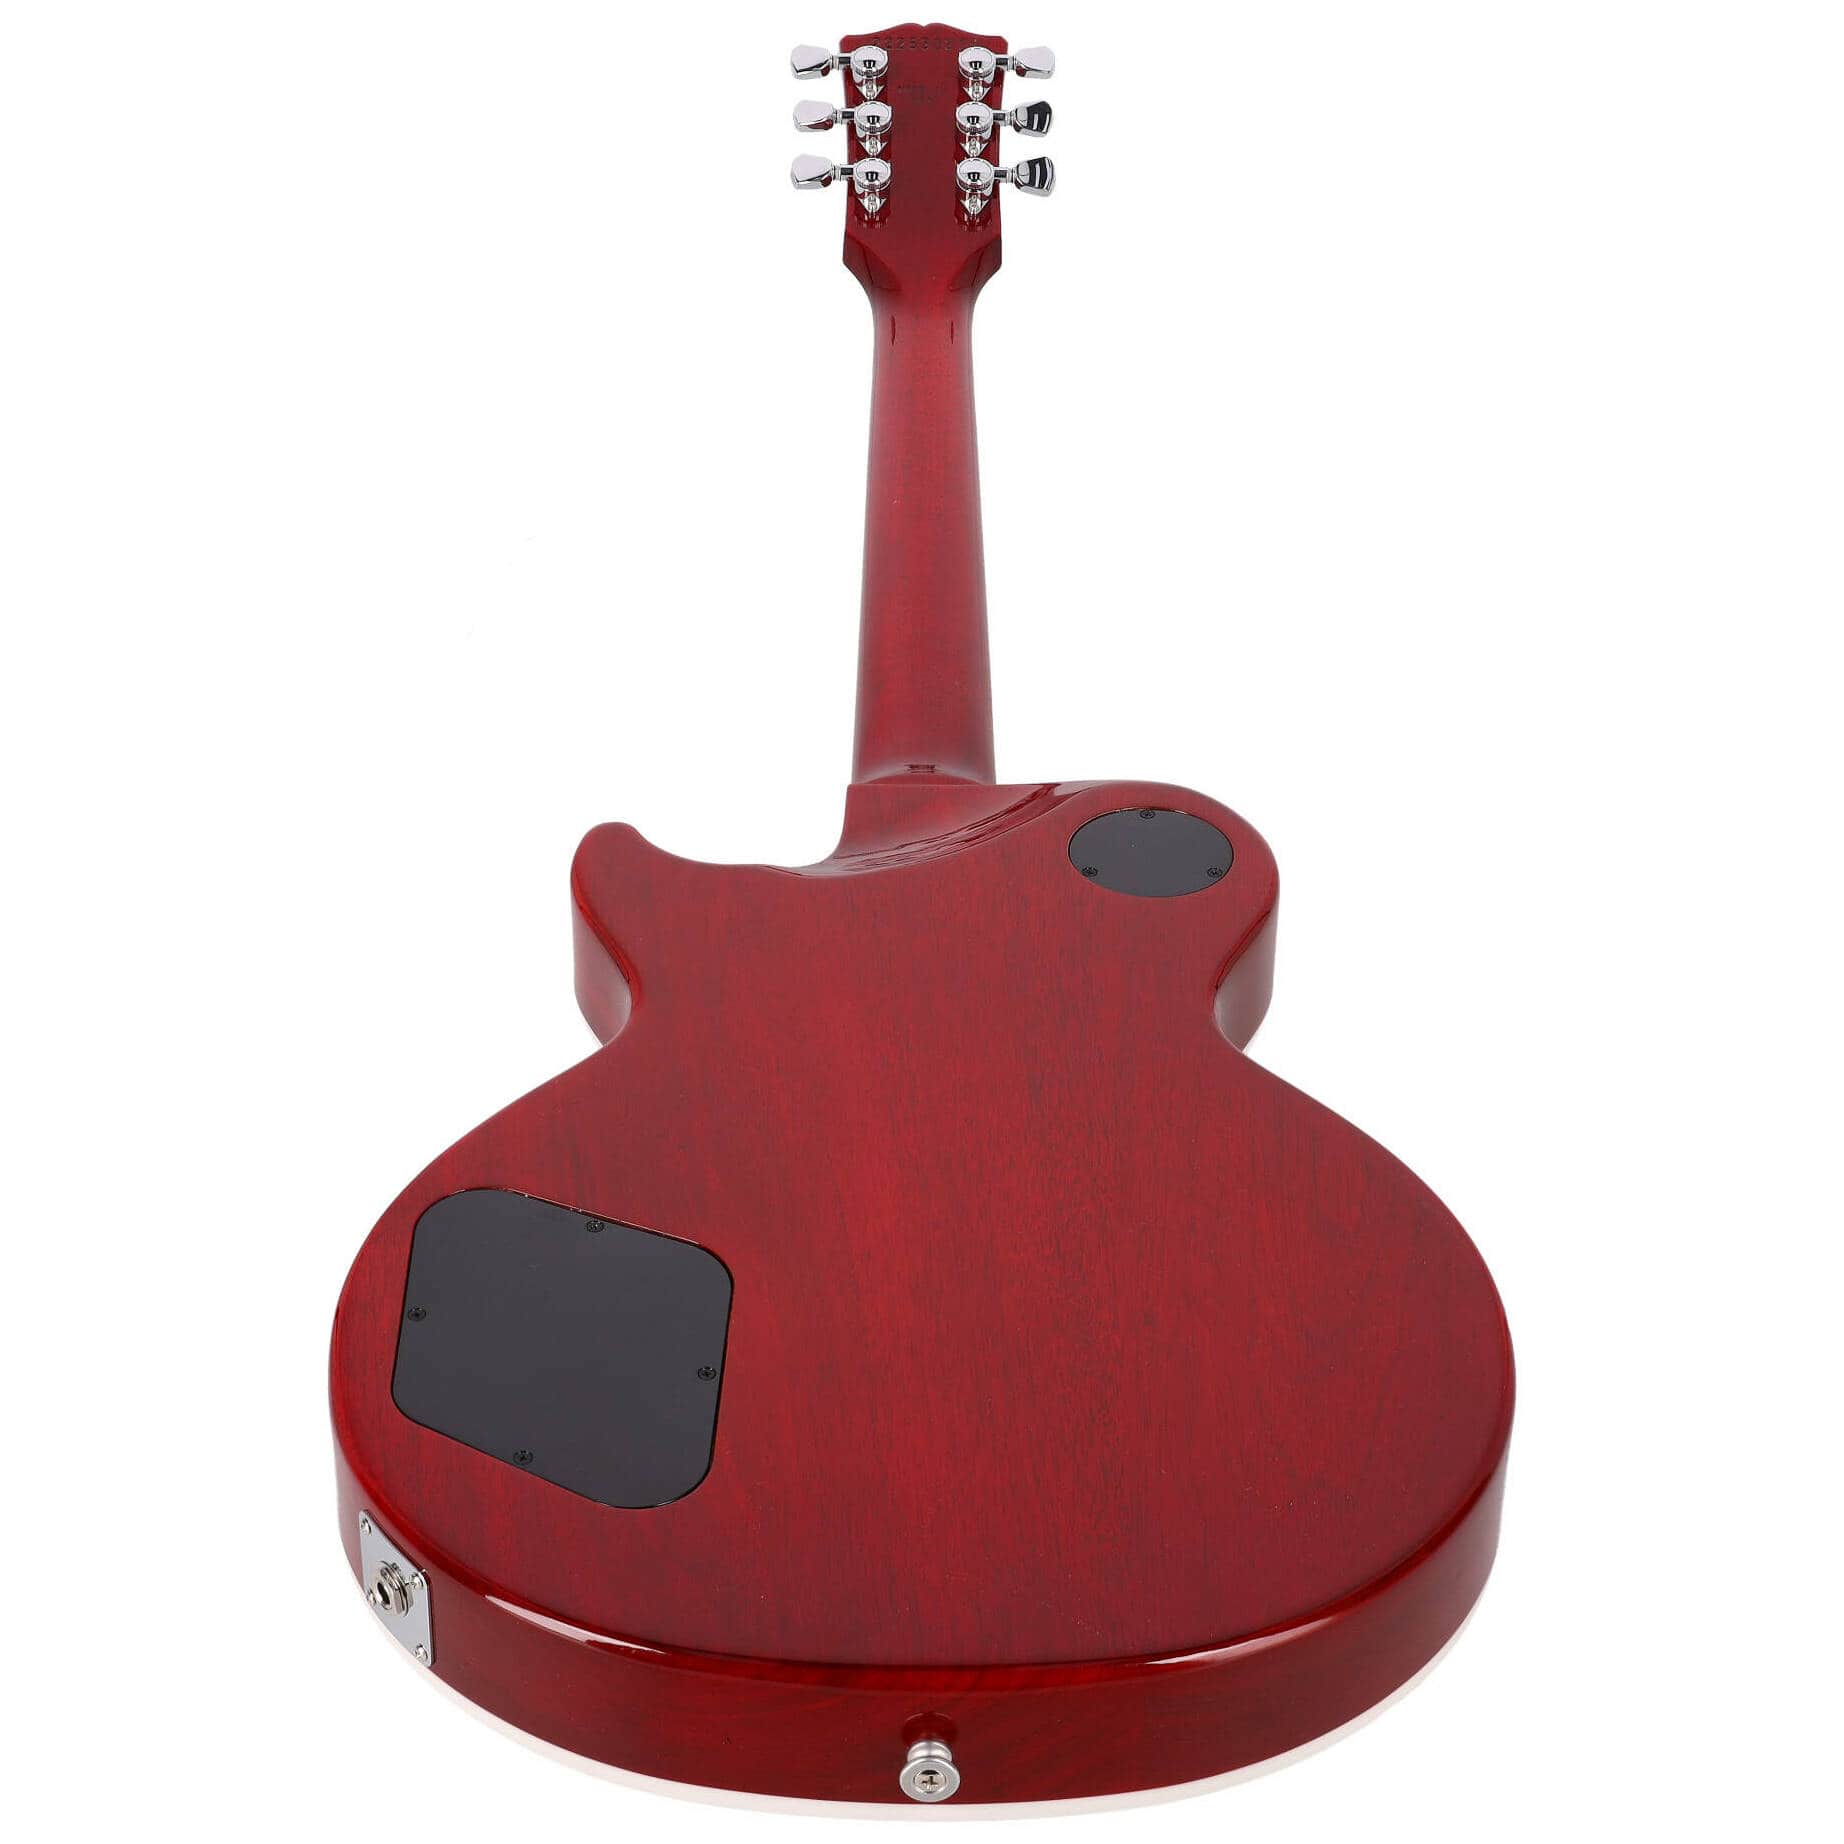 Gibson Les Paul Modern Figured Cherry Burst 4